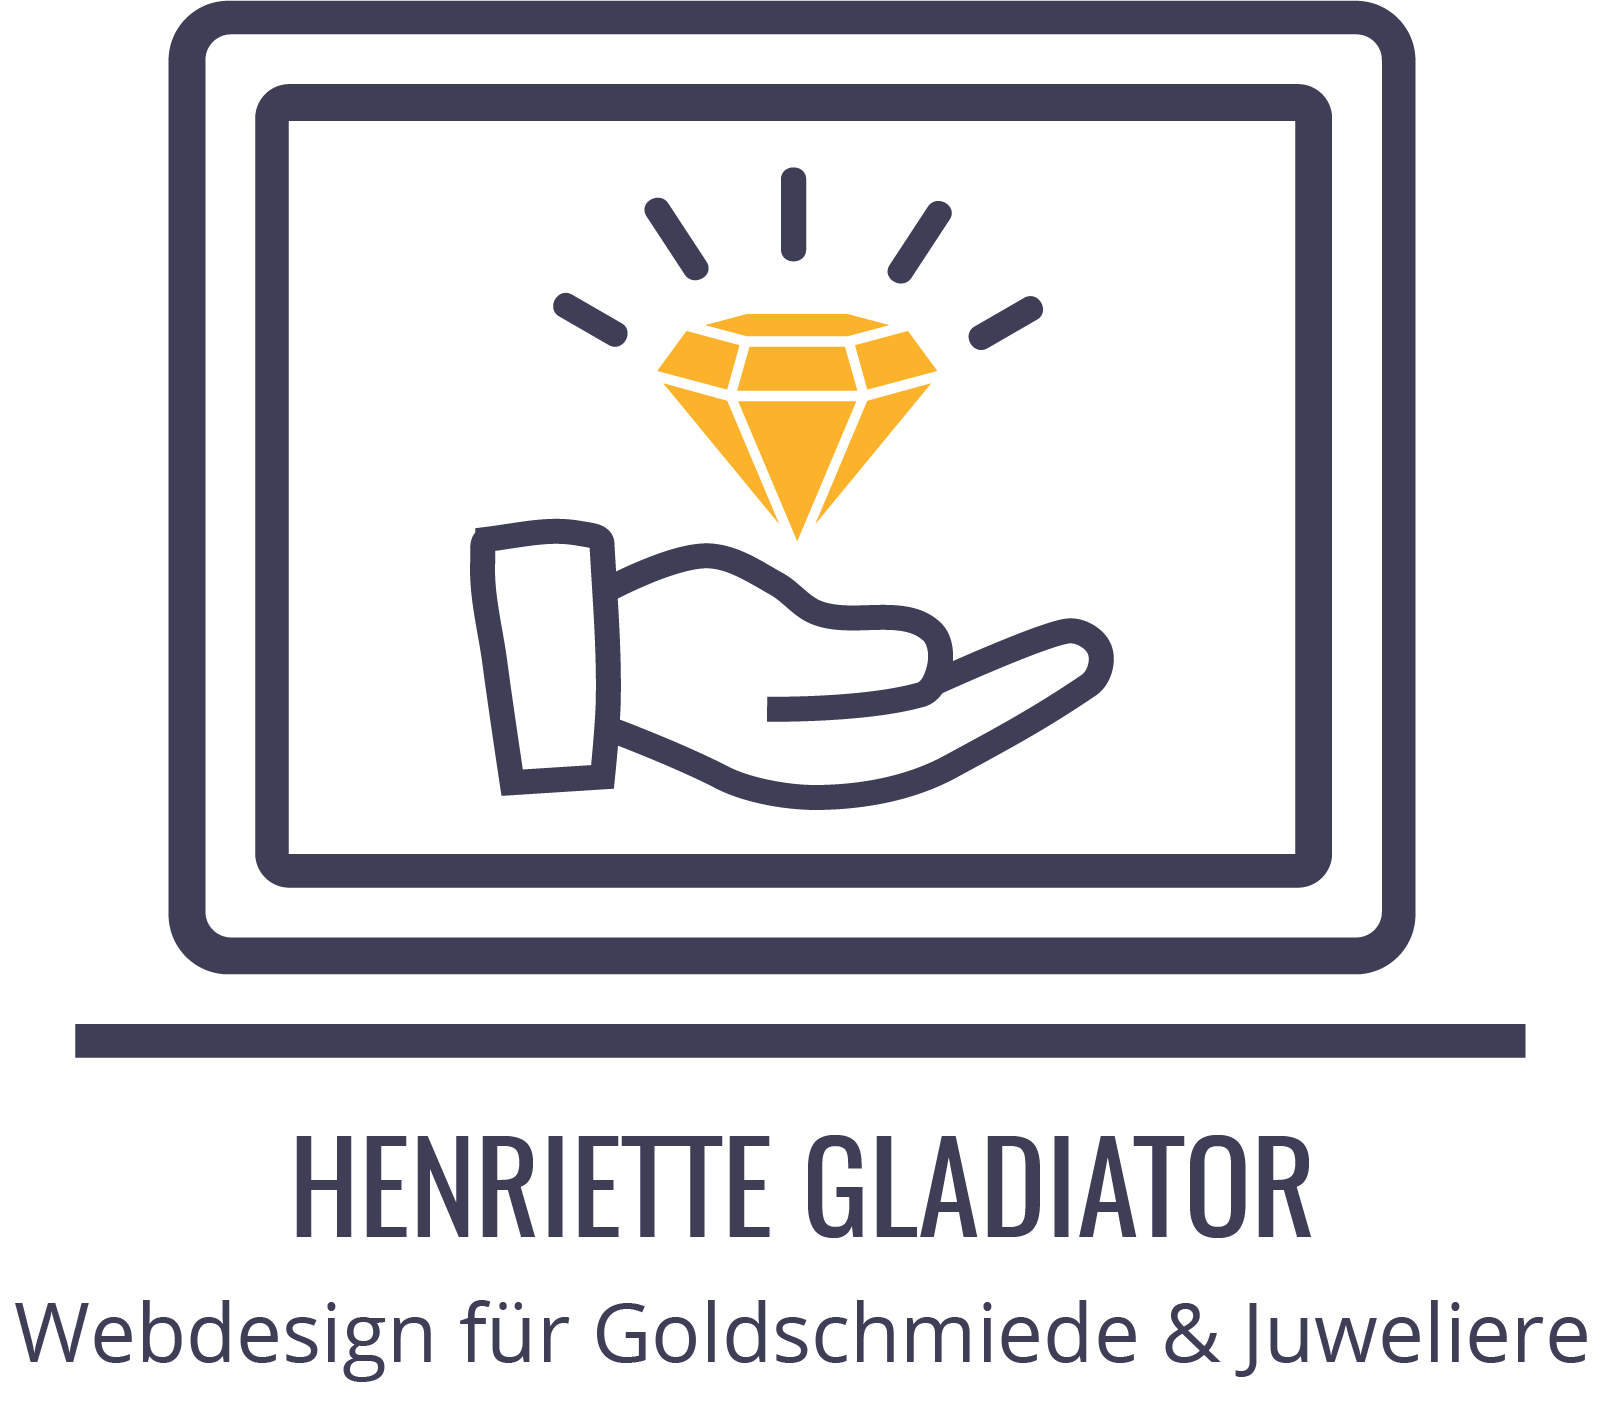 Henriette Gladiator